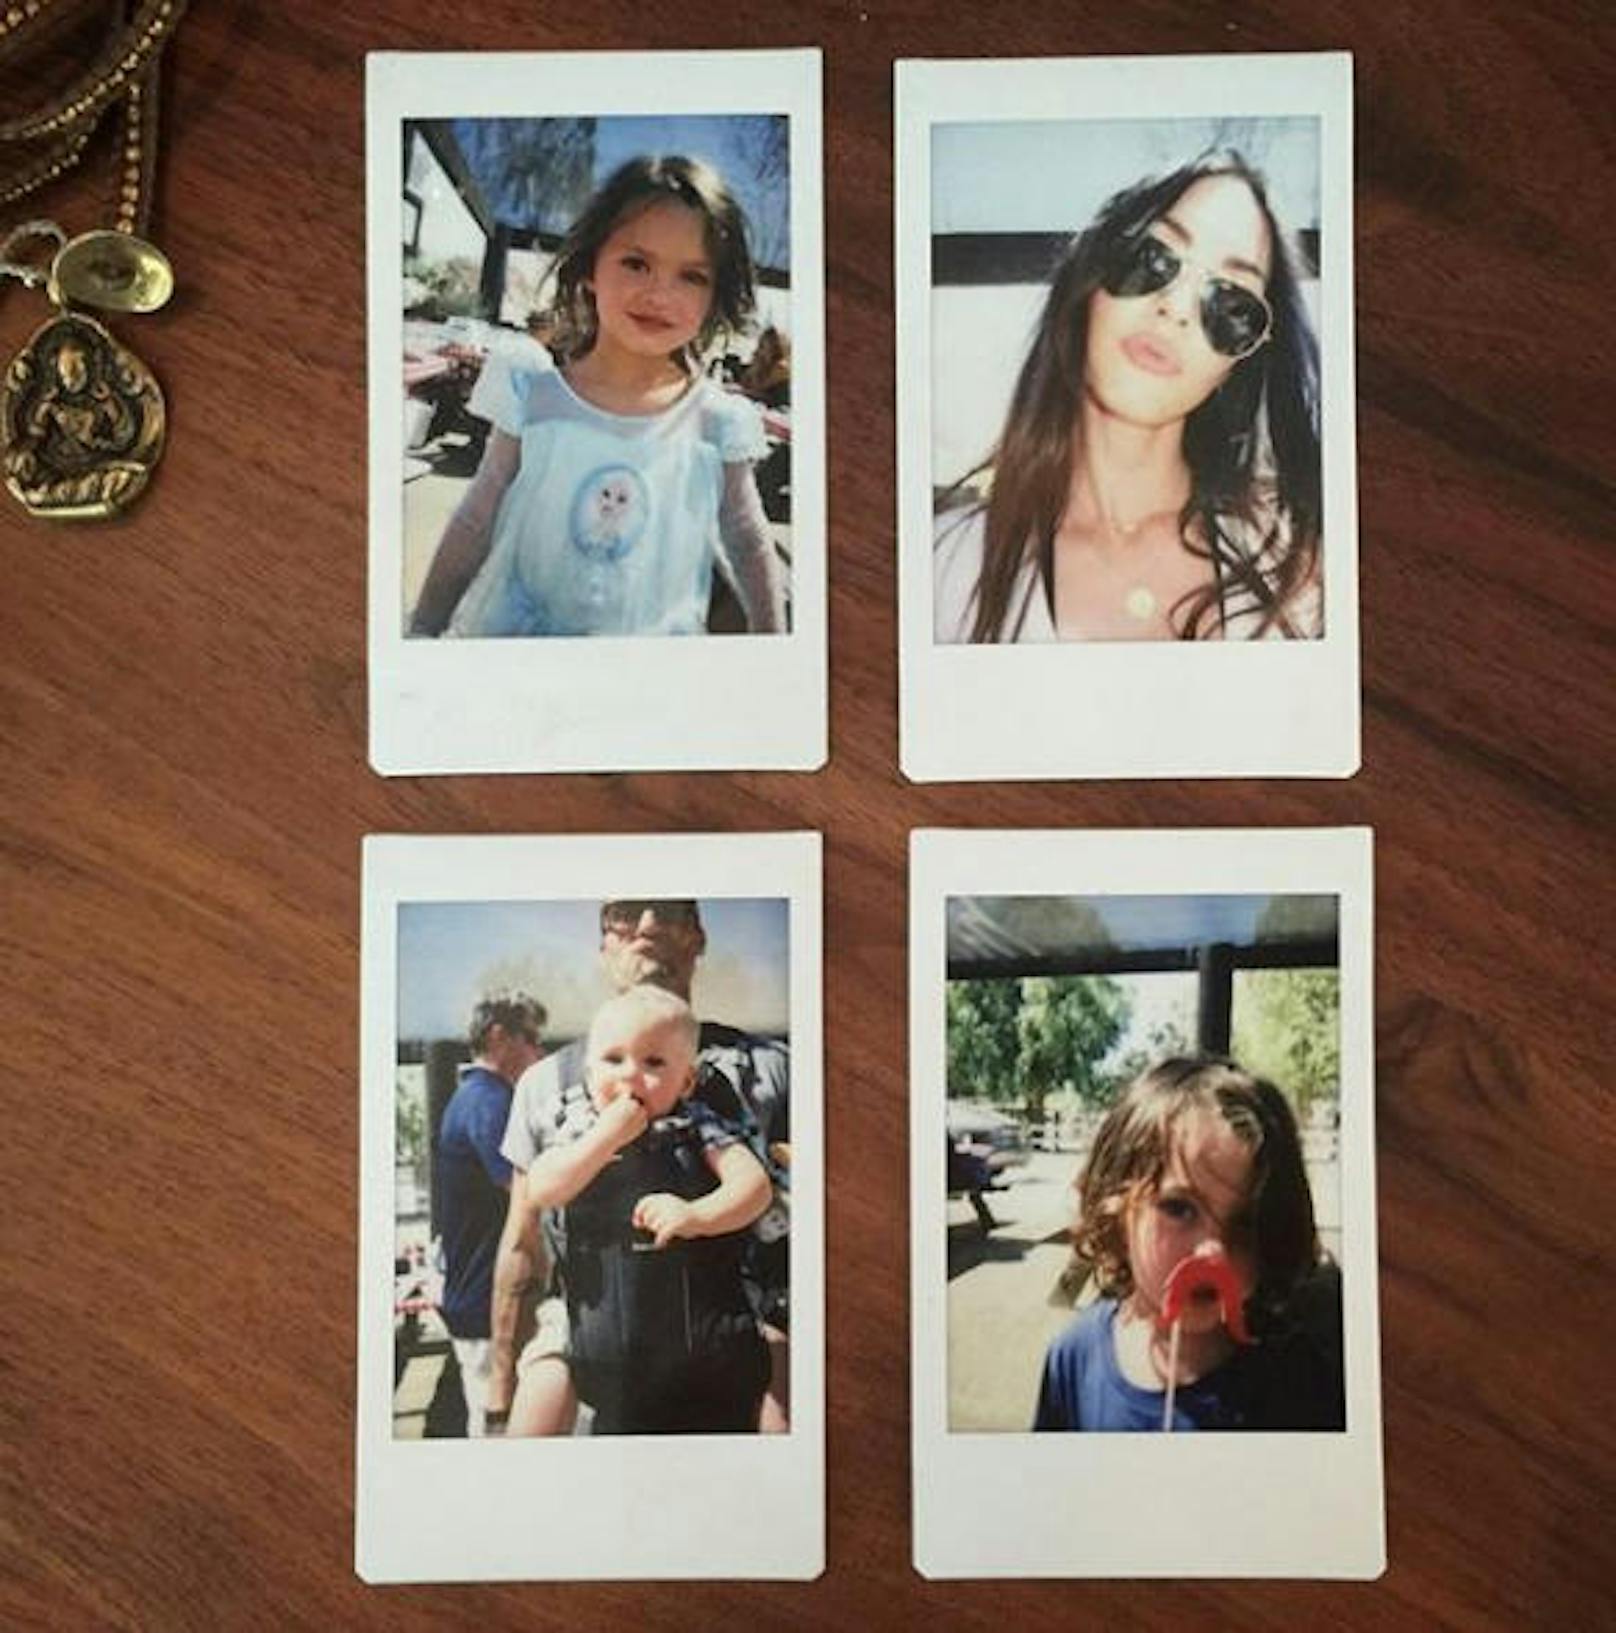 02.08.2017: Schauspielerin Megan Fox (31) zeigt auf Instagram ihre vier Männer. Auf einem Schnappschuss, der vier Polaroid-Fotos festgehalten hat, sind Ehemann Brian Austin Green (44) sowie die drei gemeinsamen Söhne Noah Shannon (4), Bodhi Ransom (3) und Journey River (1) zu sehen.